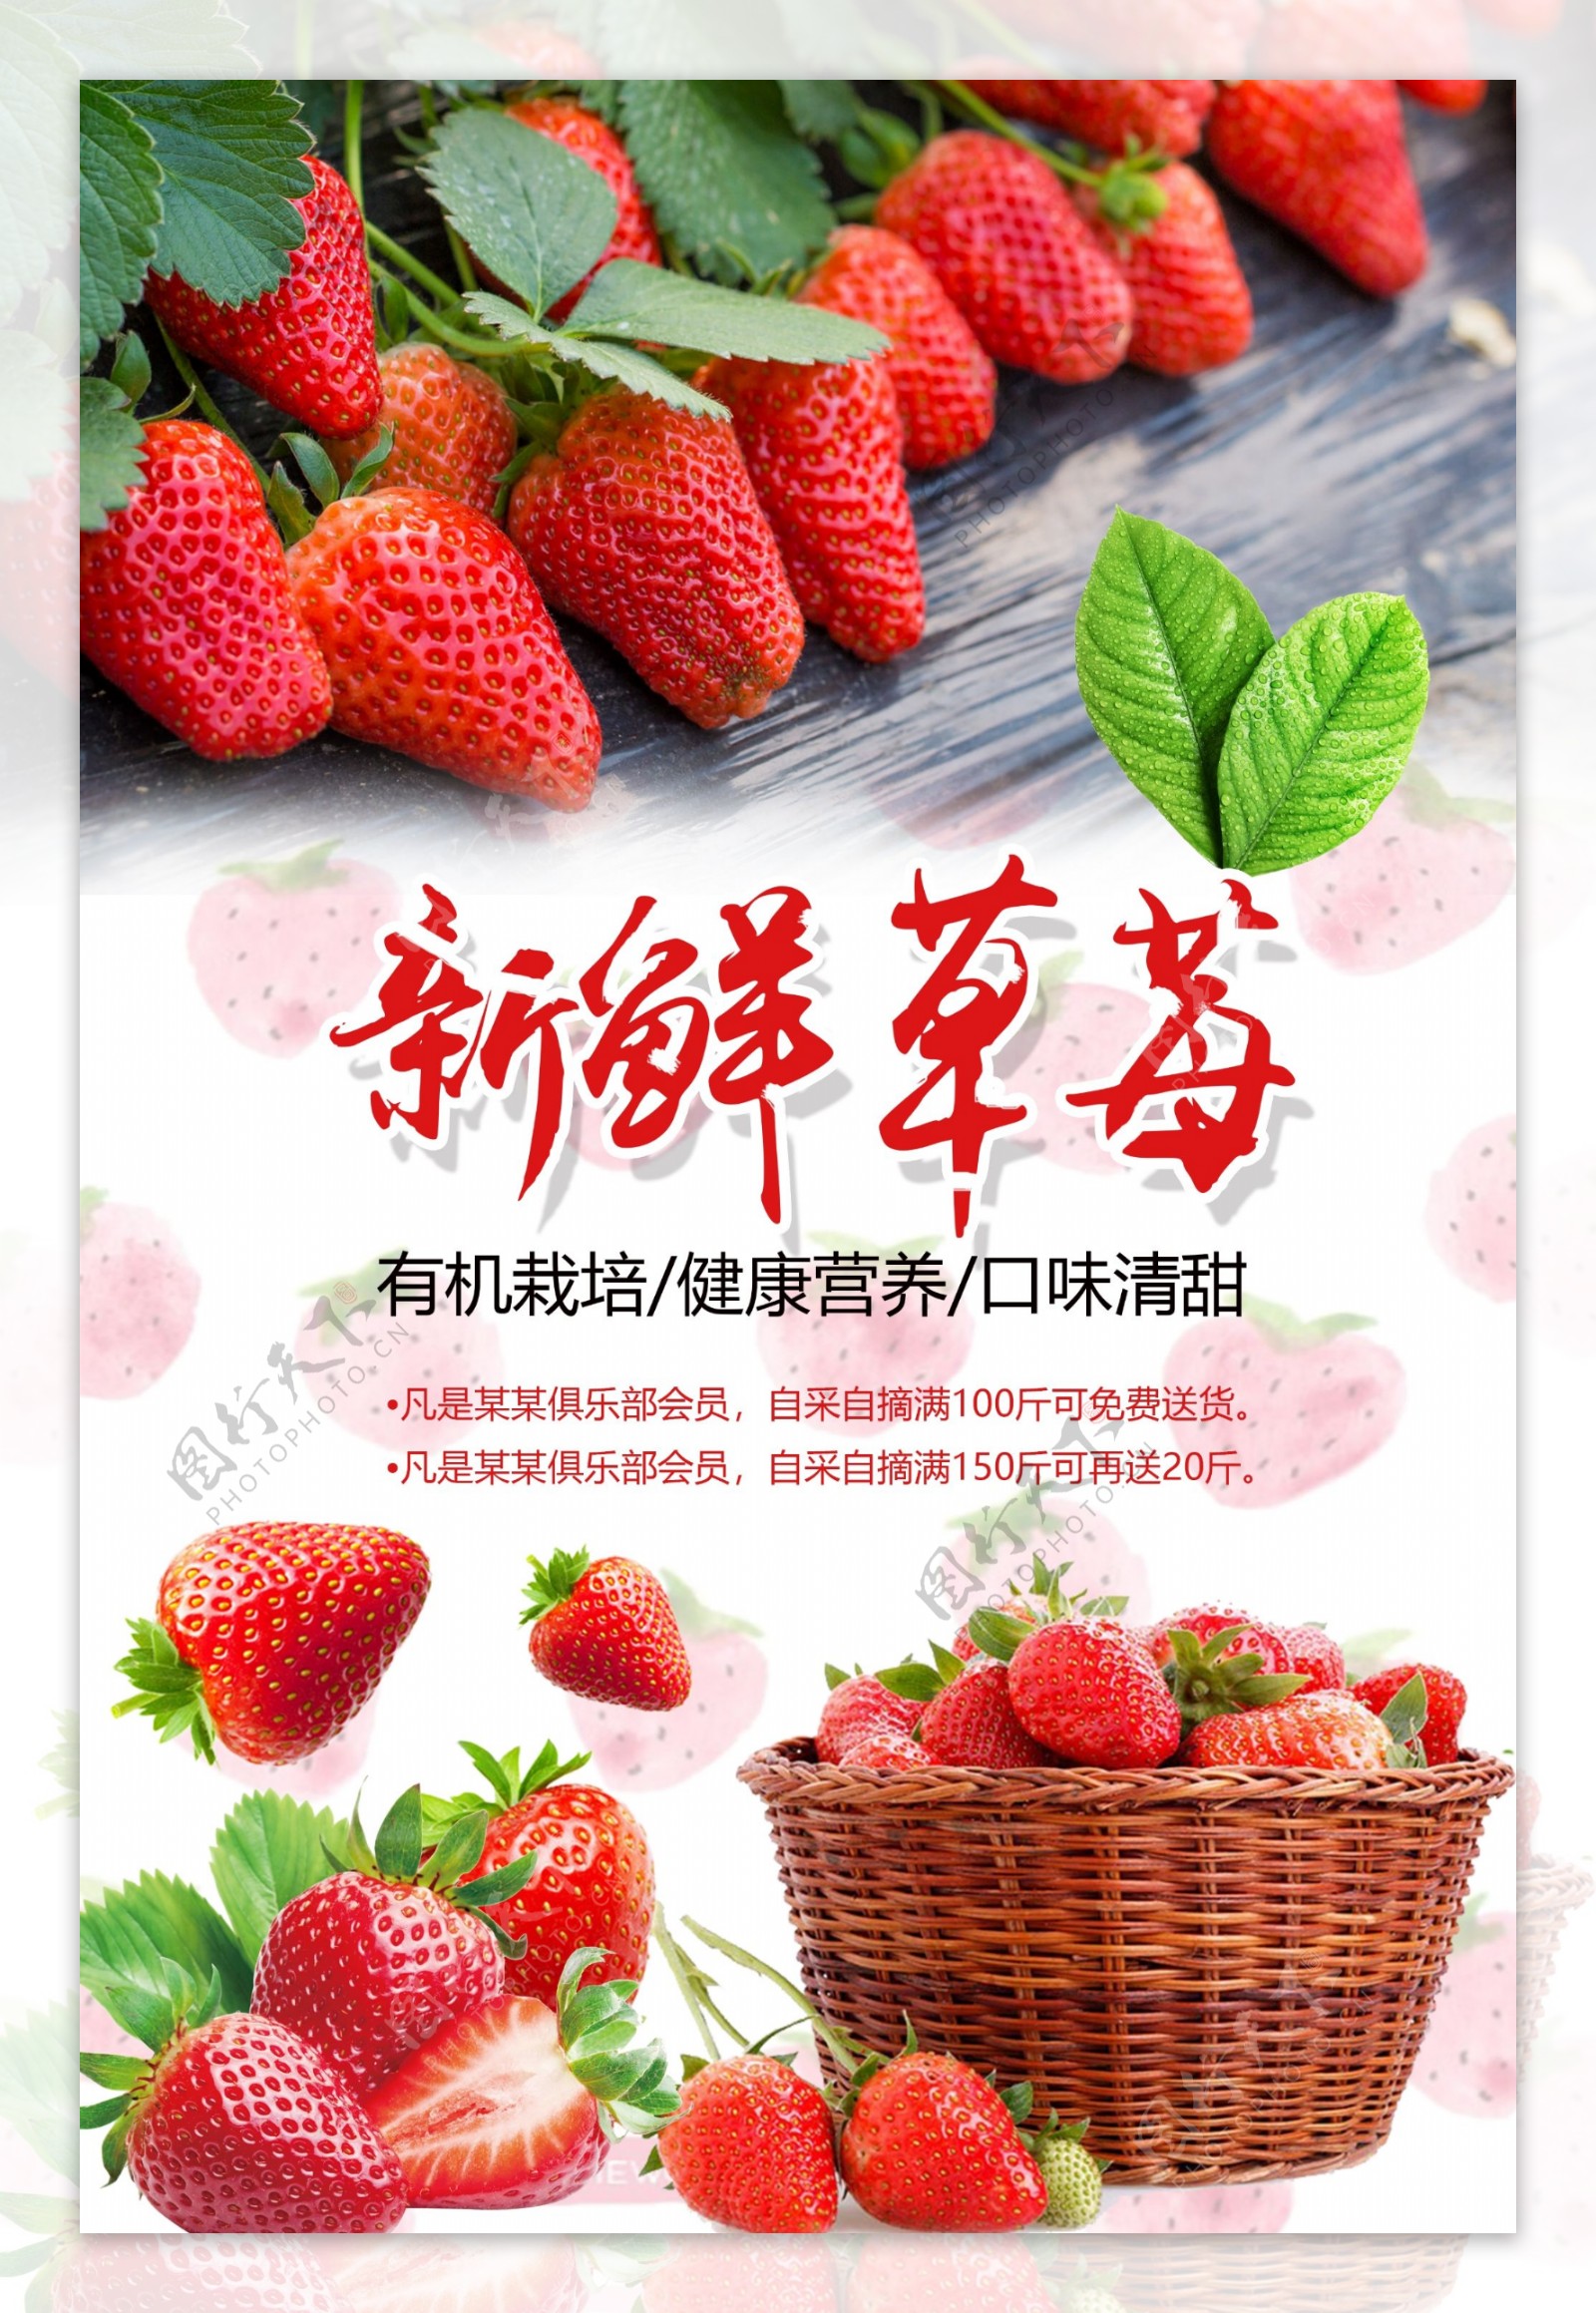 草莓采摘海报设计